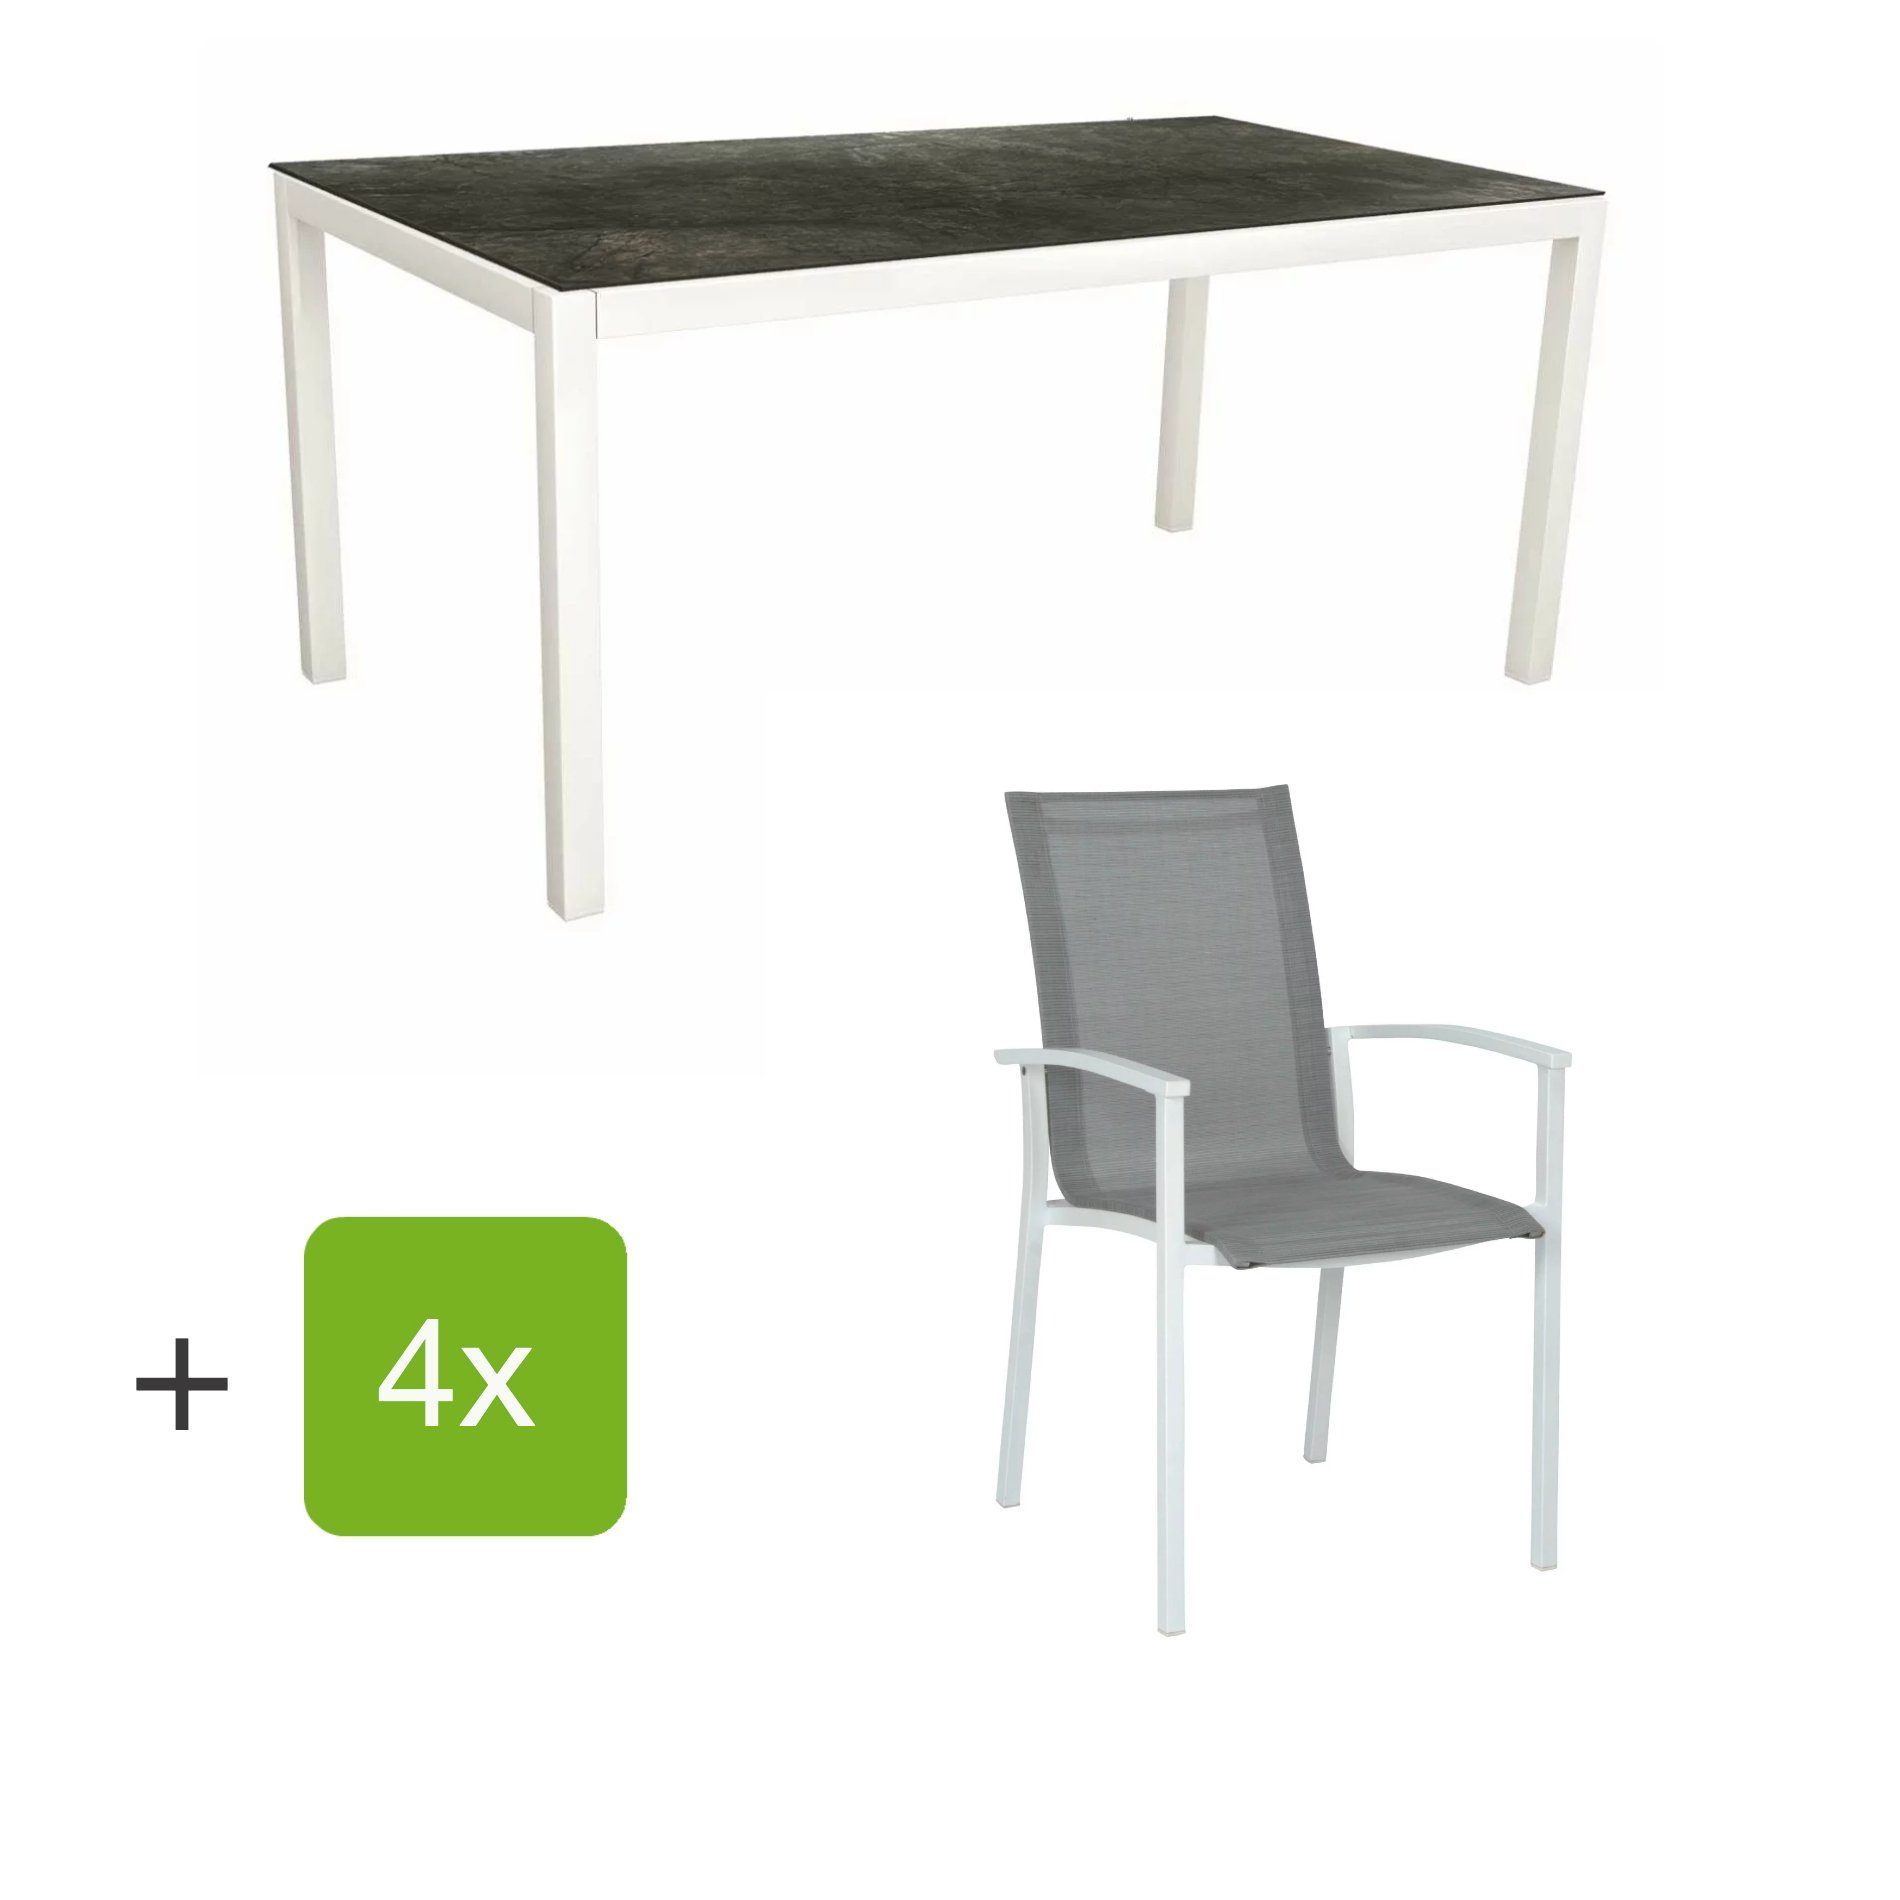 Stern Gartenmöbel-Set "Evoee", Gestelle Aluminium weiß, Sitzfläche Textilgewebe silberfarben, Tischplatte HPL Dark Marble